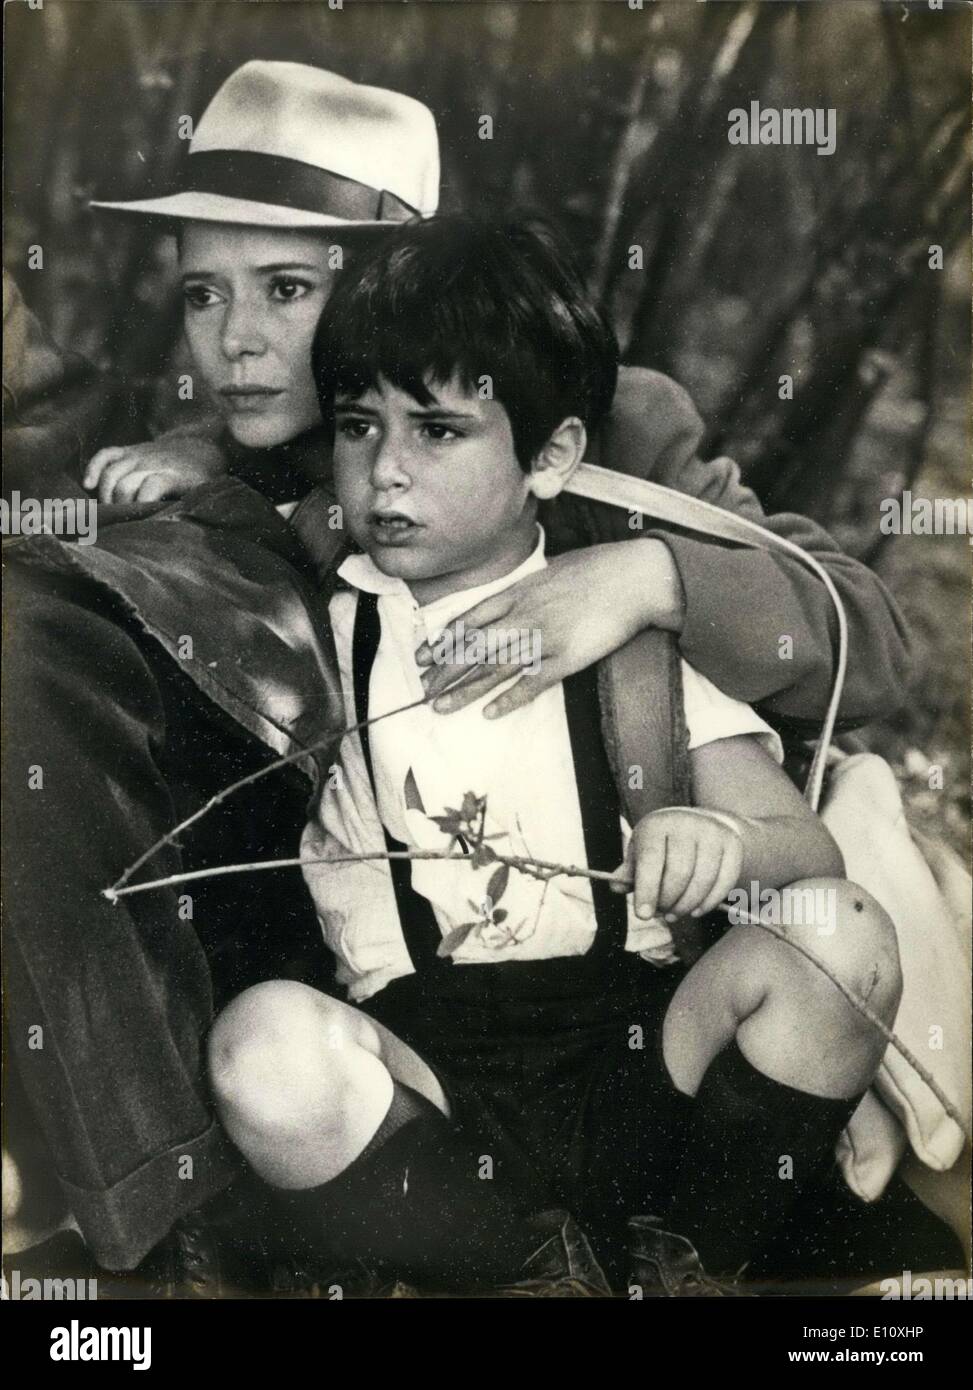 24 maggio 1974 - Marie-Jose Nat ha vinto un premio al Festival di Cannes per il suo ruolo in ''Les Violons du bal'', che è stato girato con suo figlio David e diretto da Michel Drach. Nat e suo figlio sono illustrati nel corso di una scena del film. Foto Stock